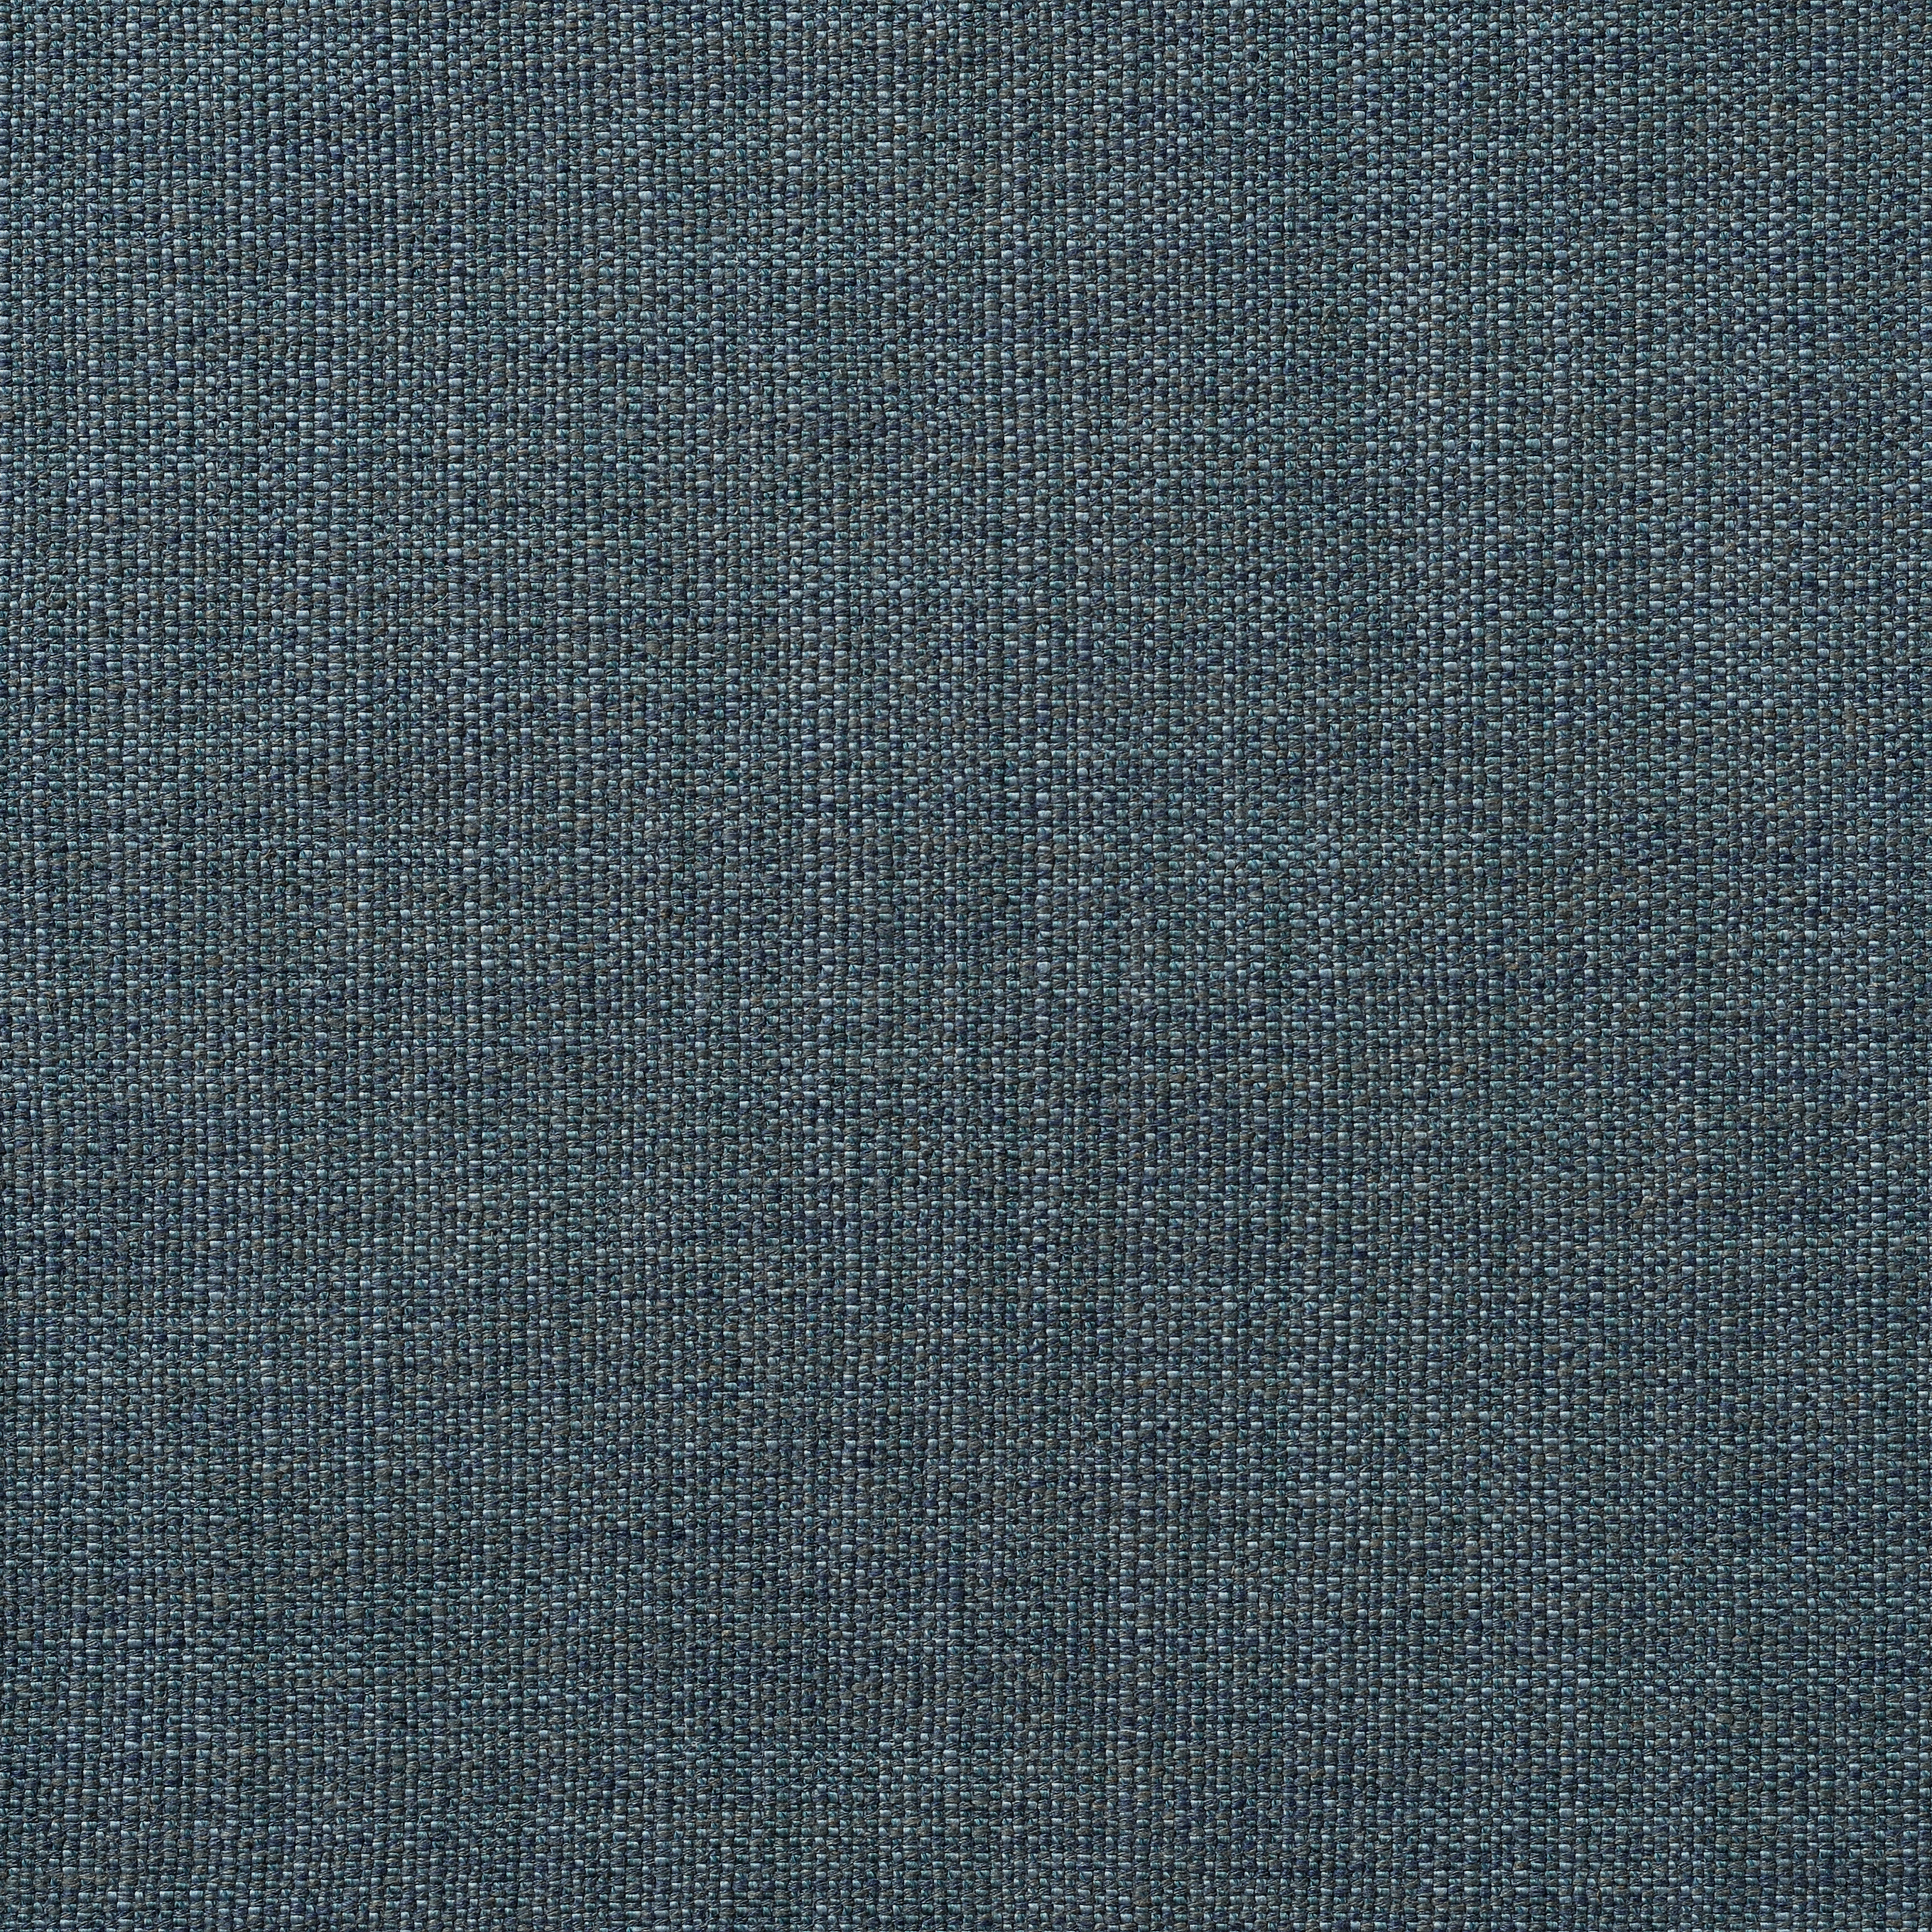 Mitford Rustic Weave - Teal Marl